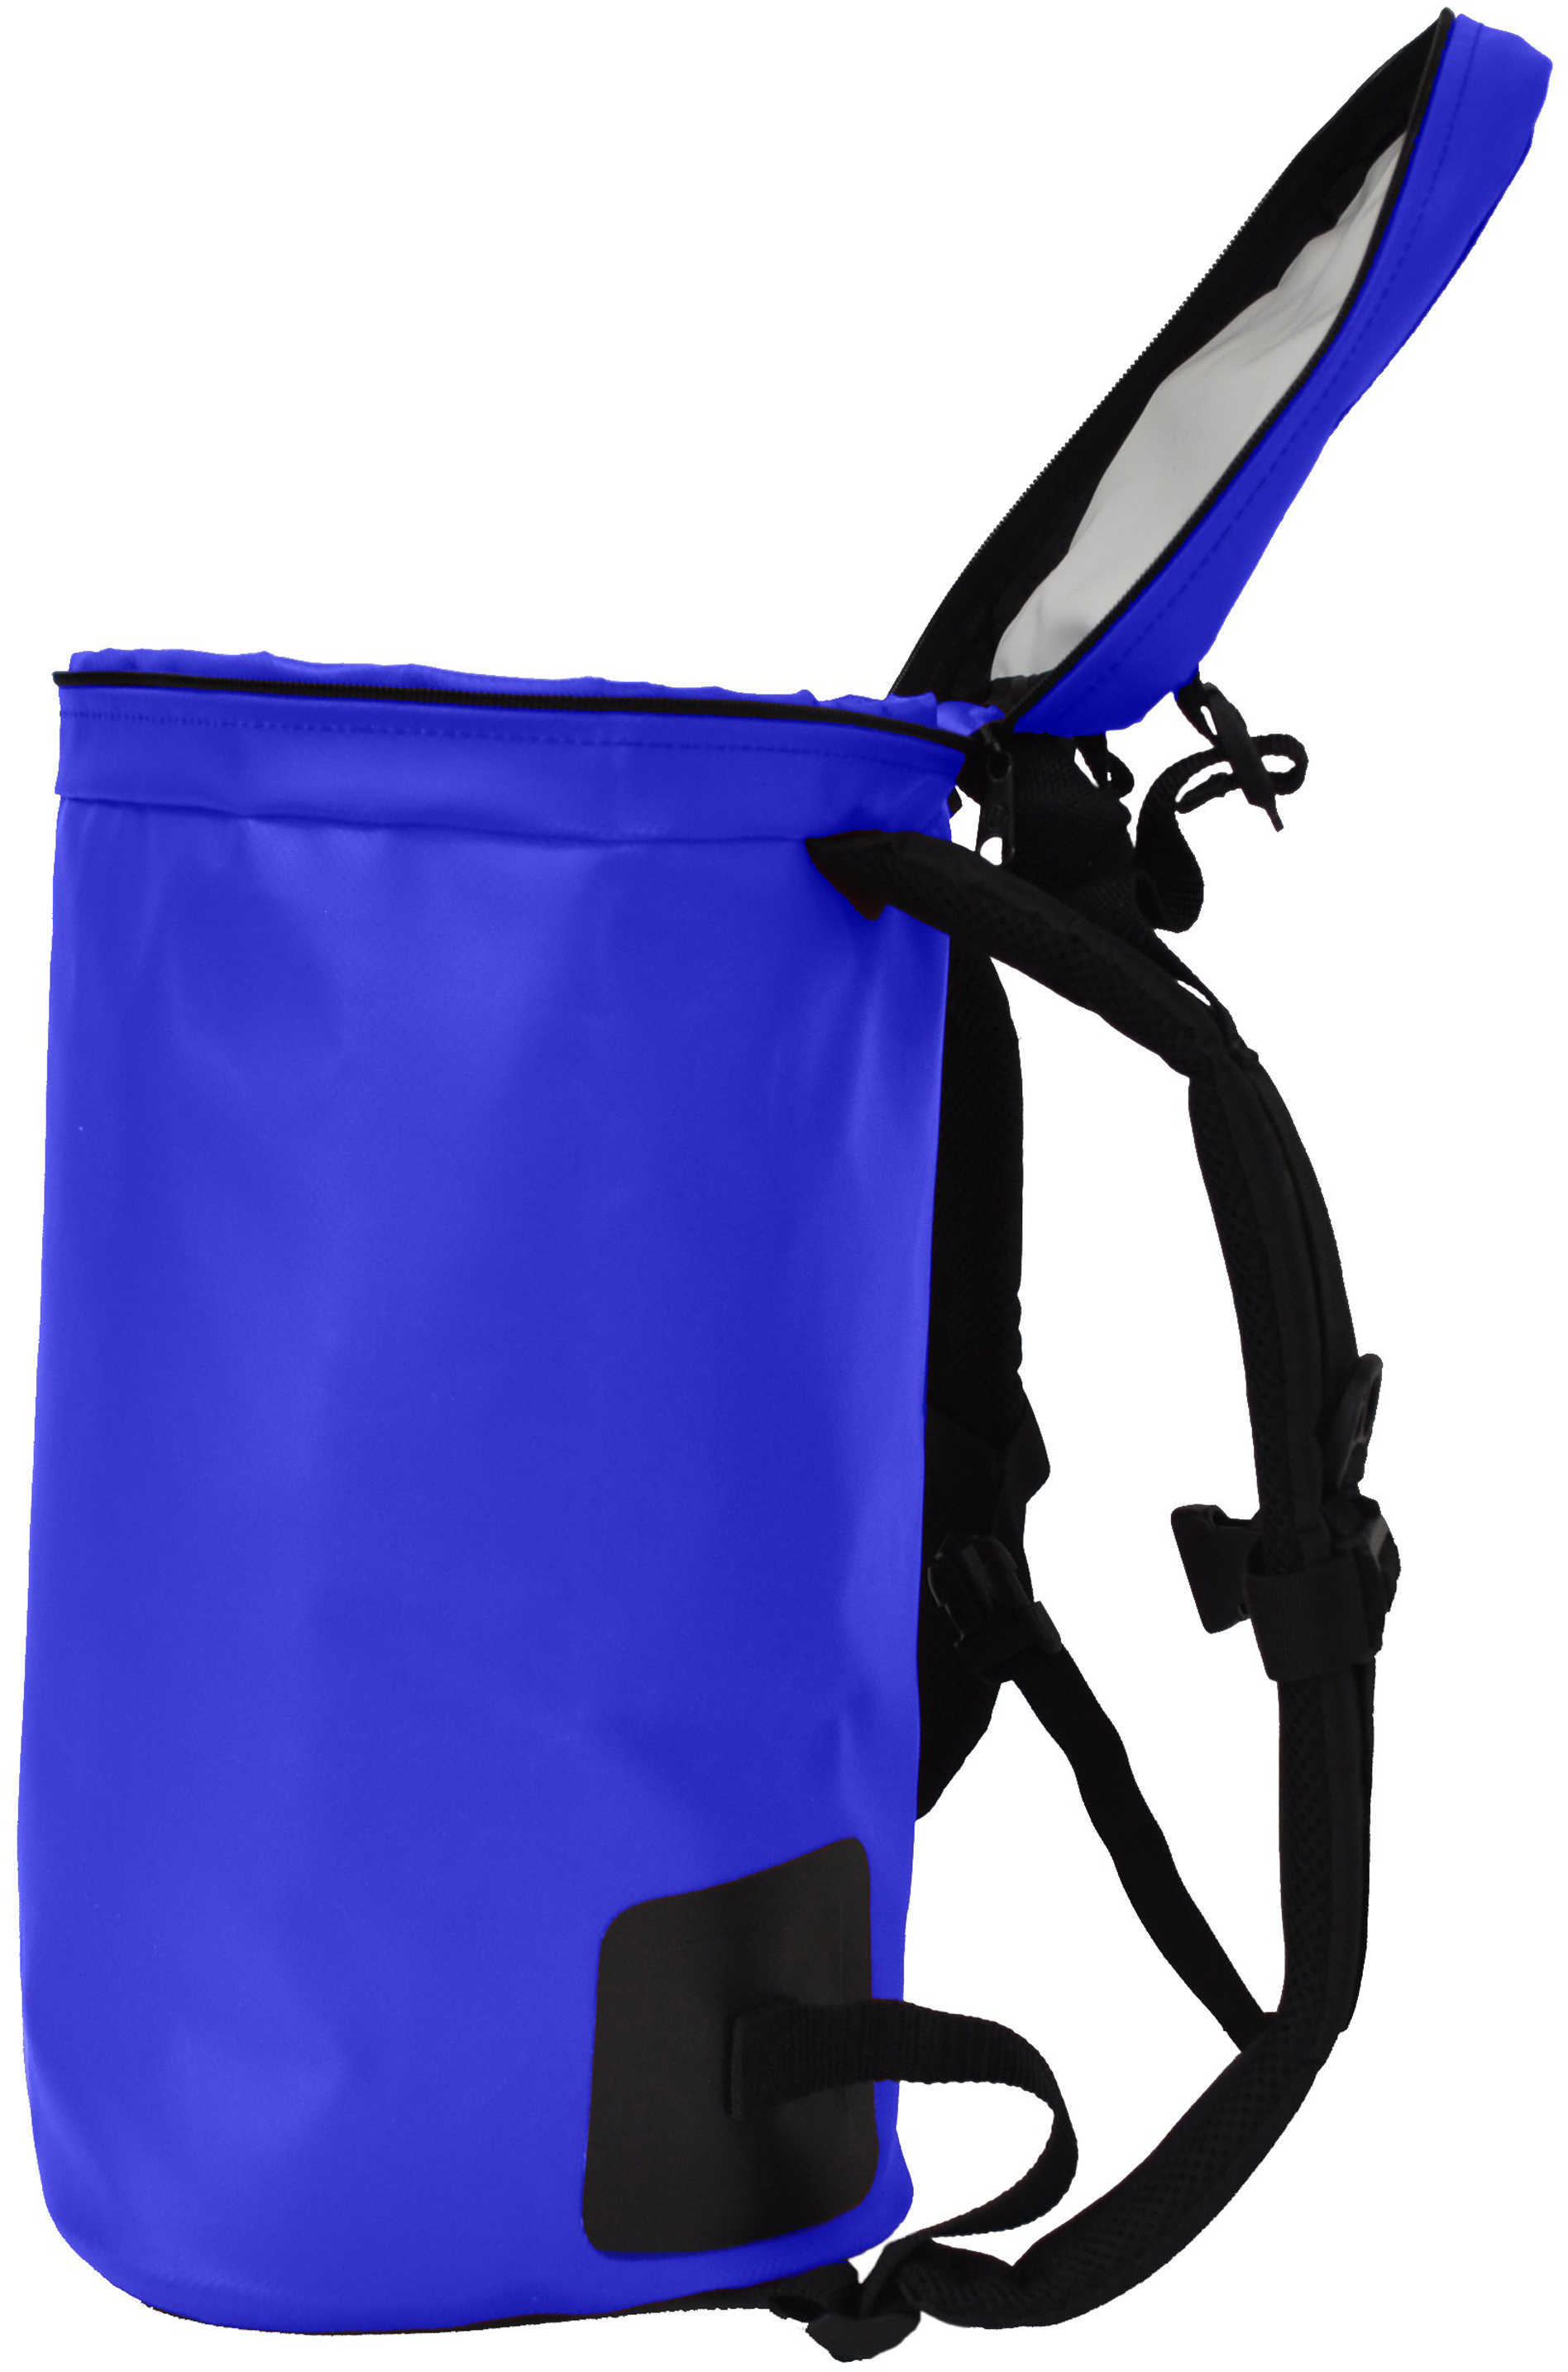 Frostpak Coolpack Backpack Cooler Blue Md: 024902